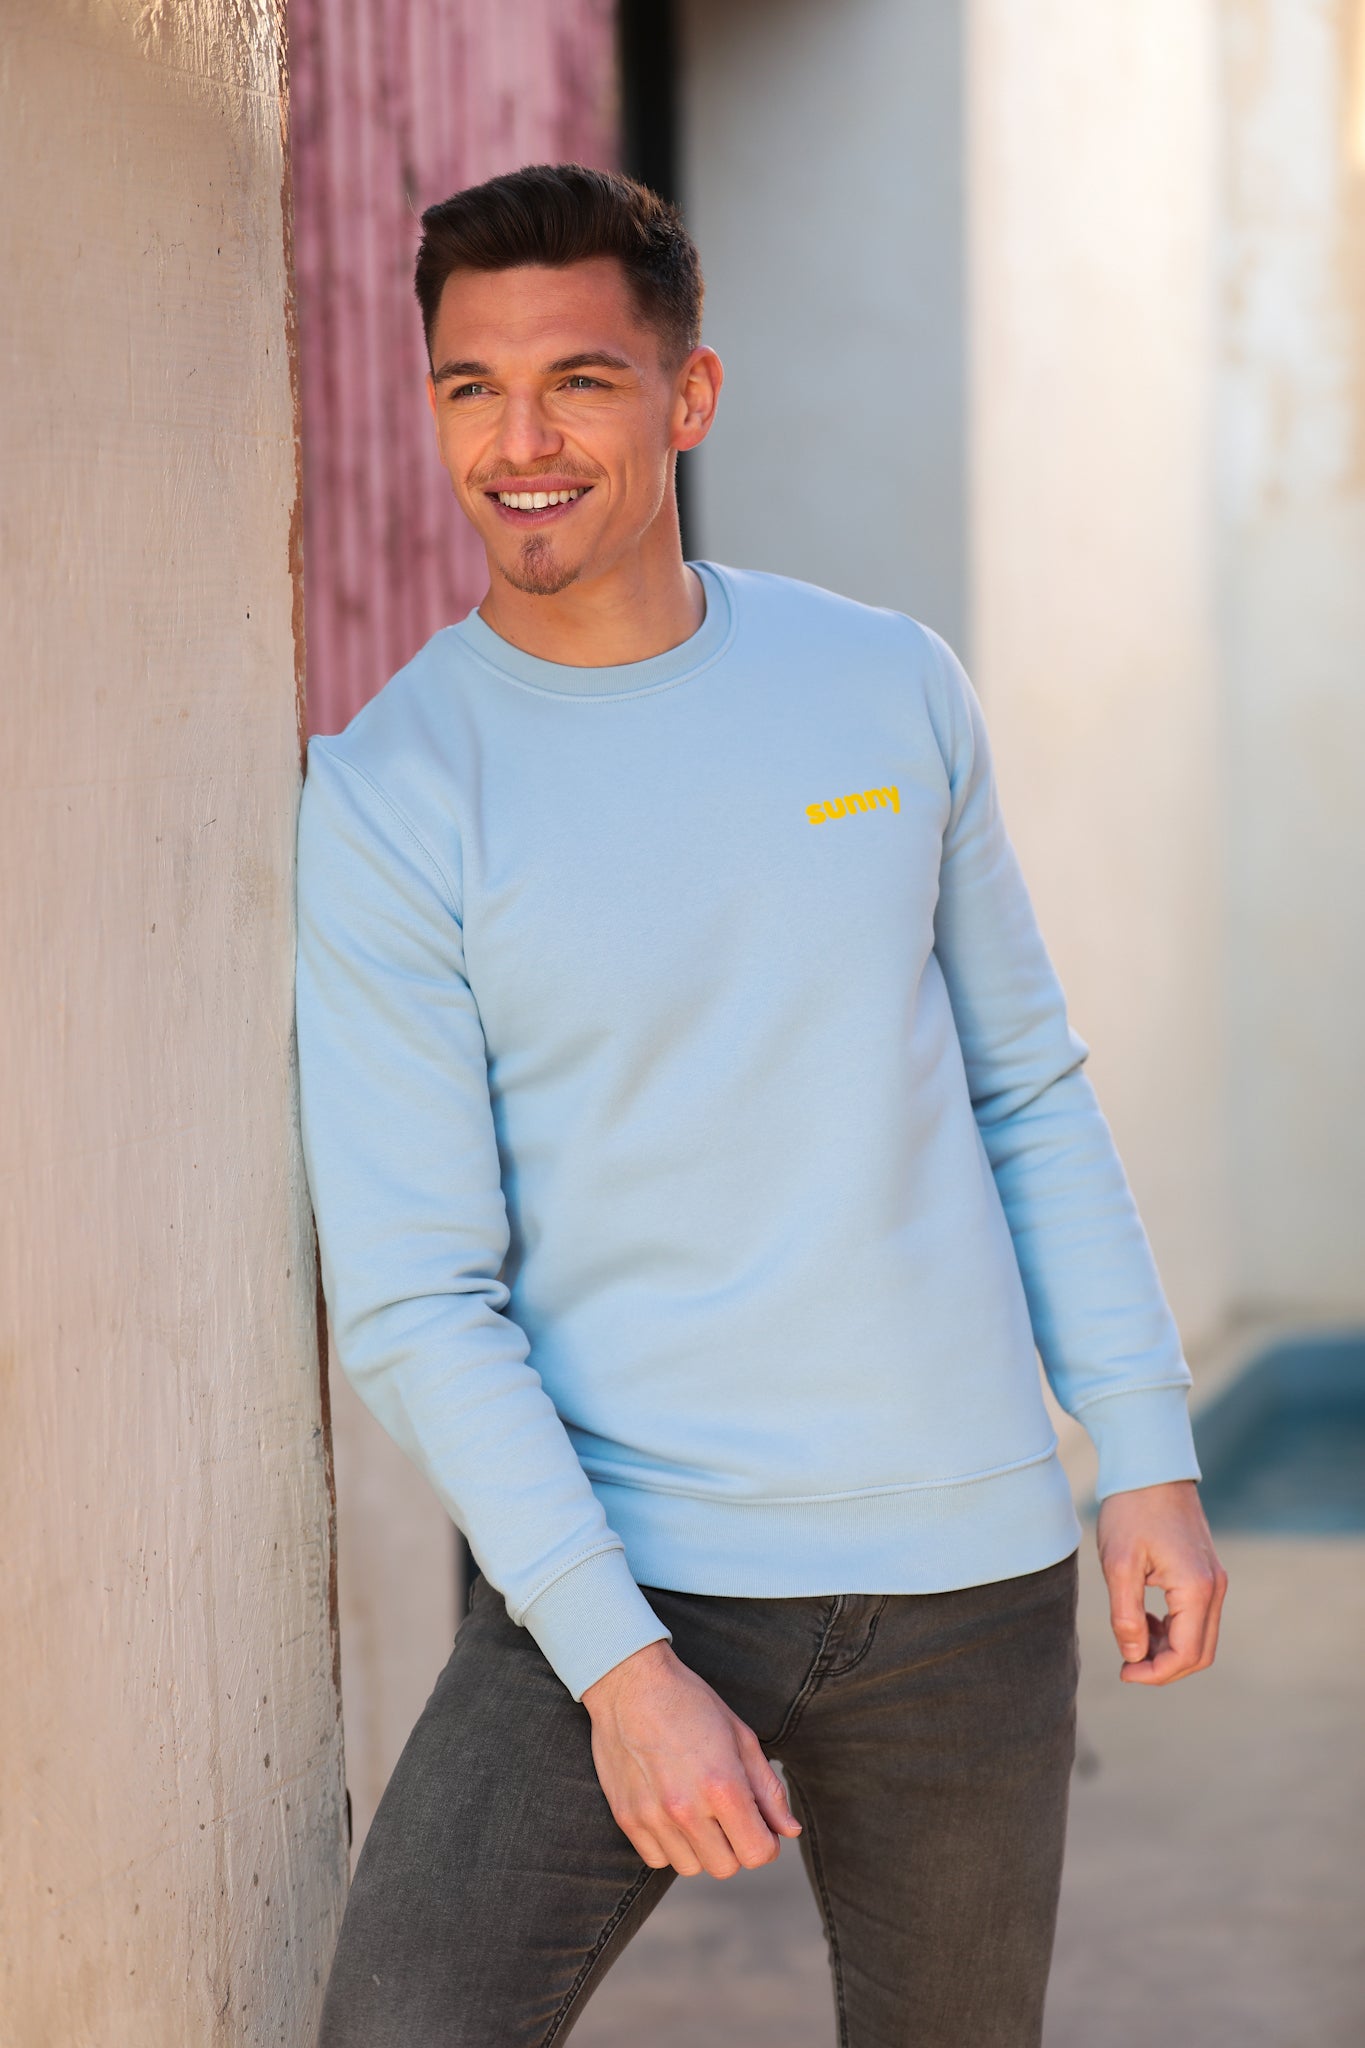 Mannequin homme beau et souriant, pose appuyé contre un mur avec un pull type sweatshirt bleu pastel qui comporte la mention "sunny" en jaune côté coeur. Il a la tête légèrement de profil et regarde avec douceur et émotion vers l'horizon. Un rayon de soleil passe au-dessus de sa tête.